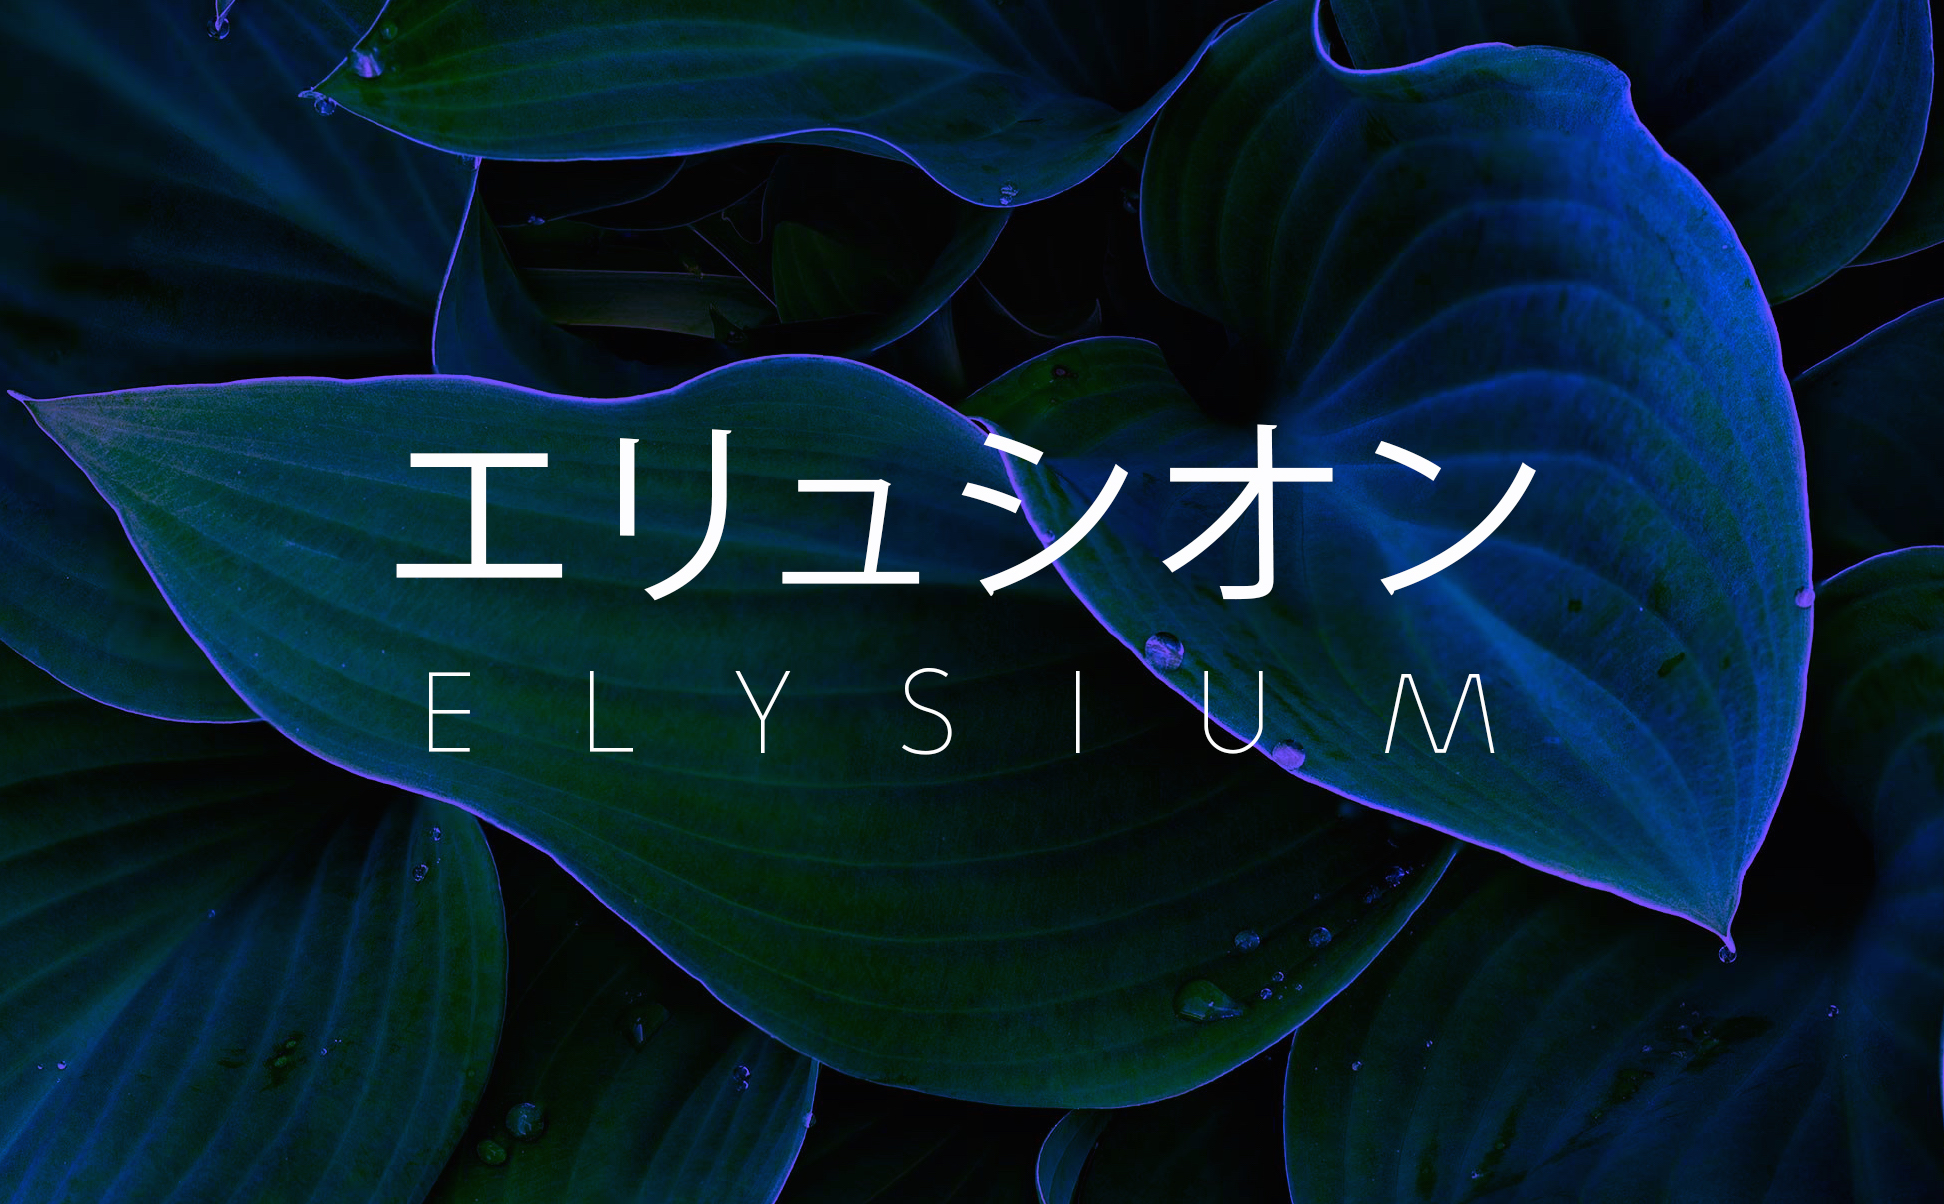 Elysium starkest blue aesthetic